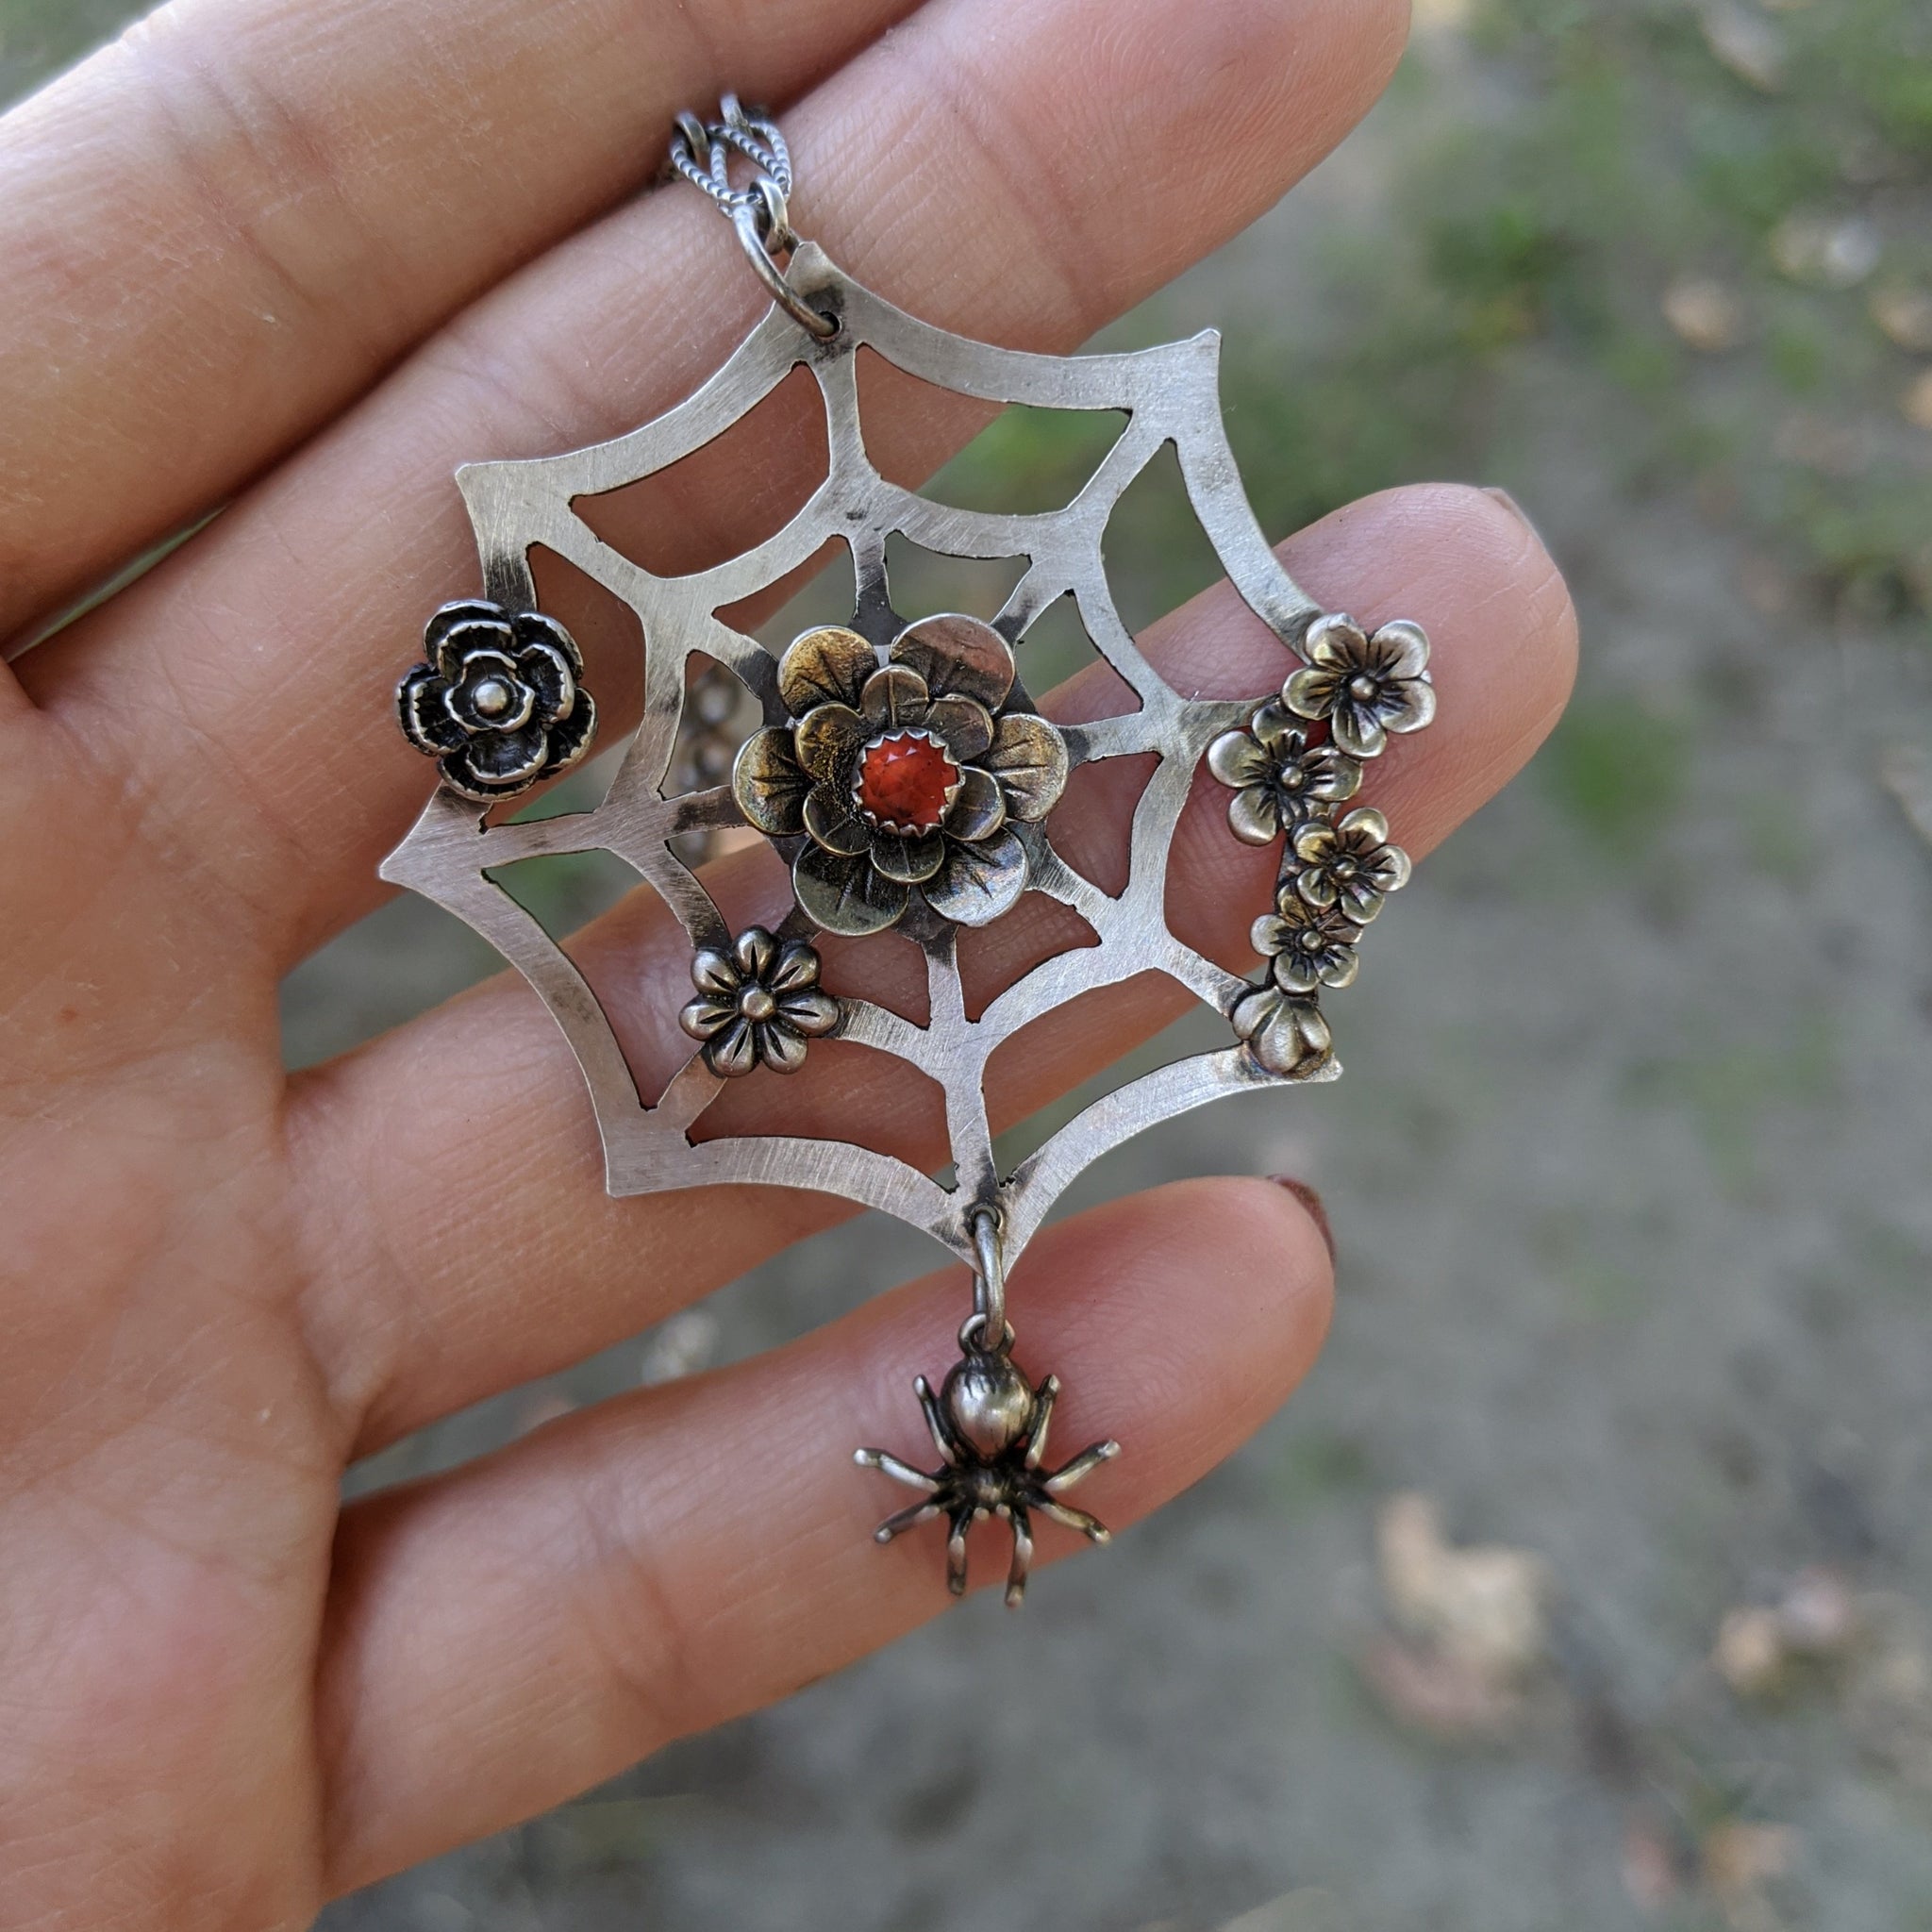 Spider Web Necklace - BonfireDesign